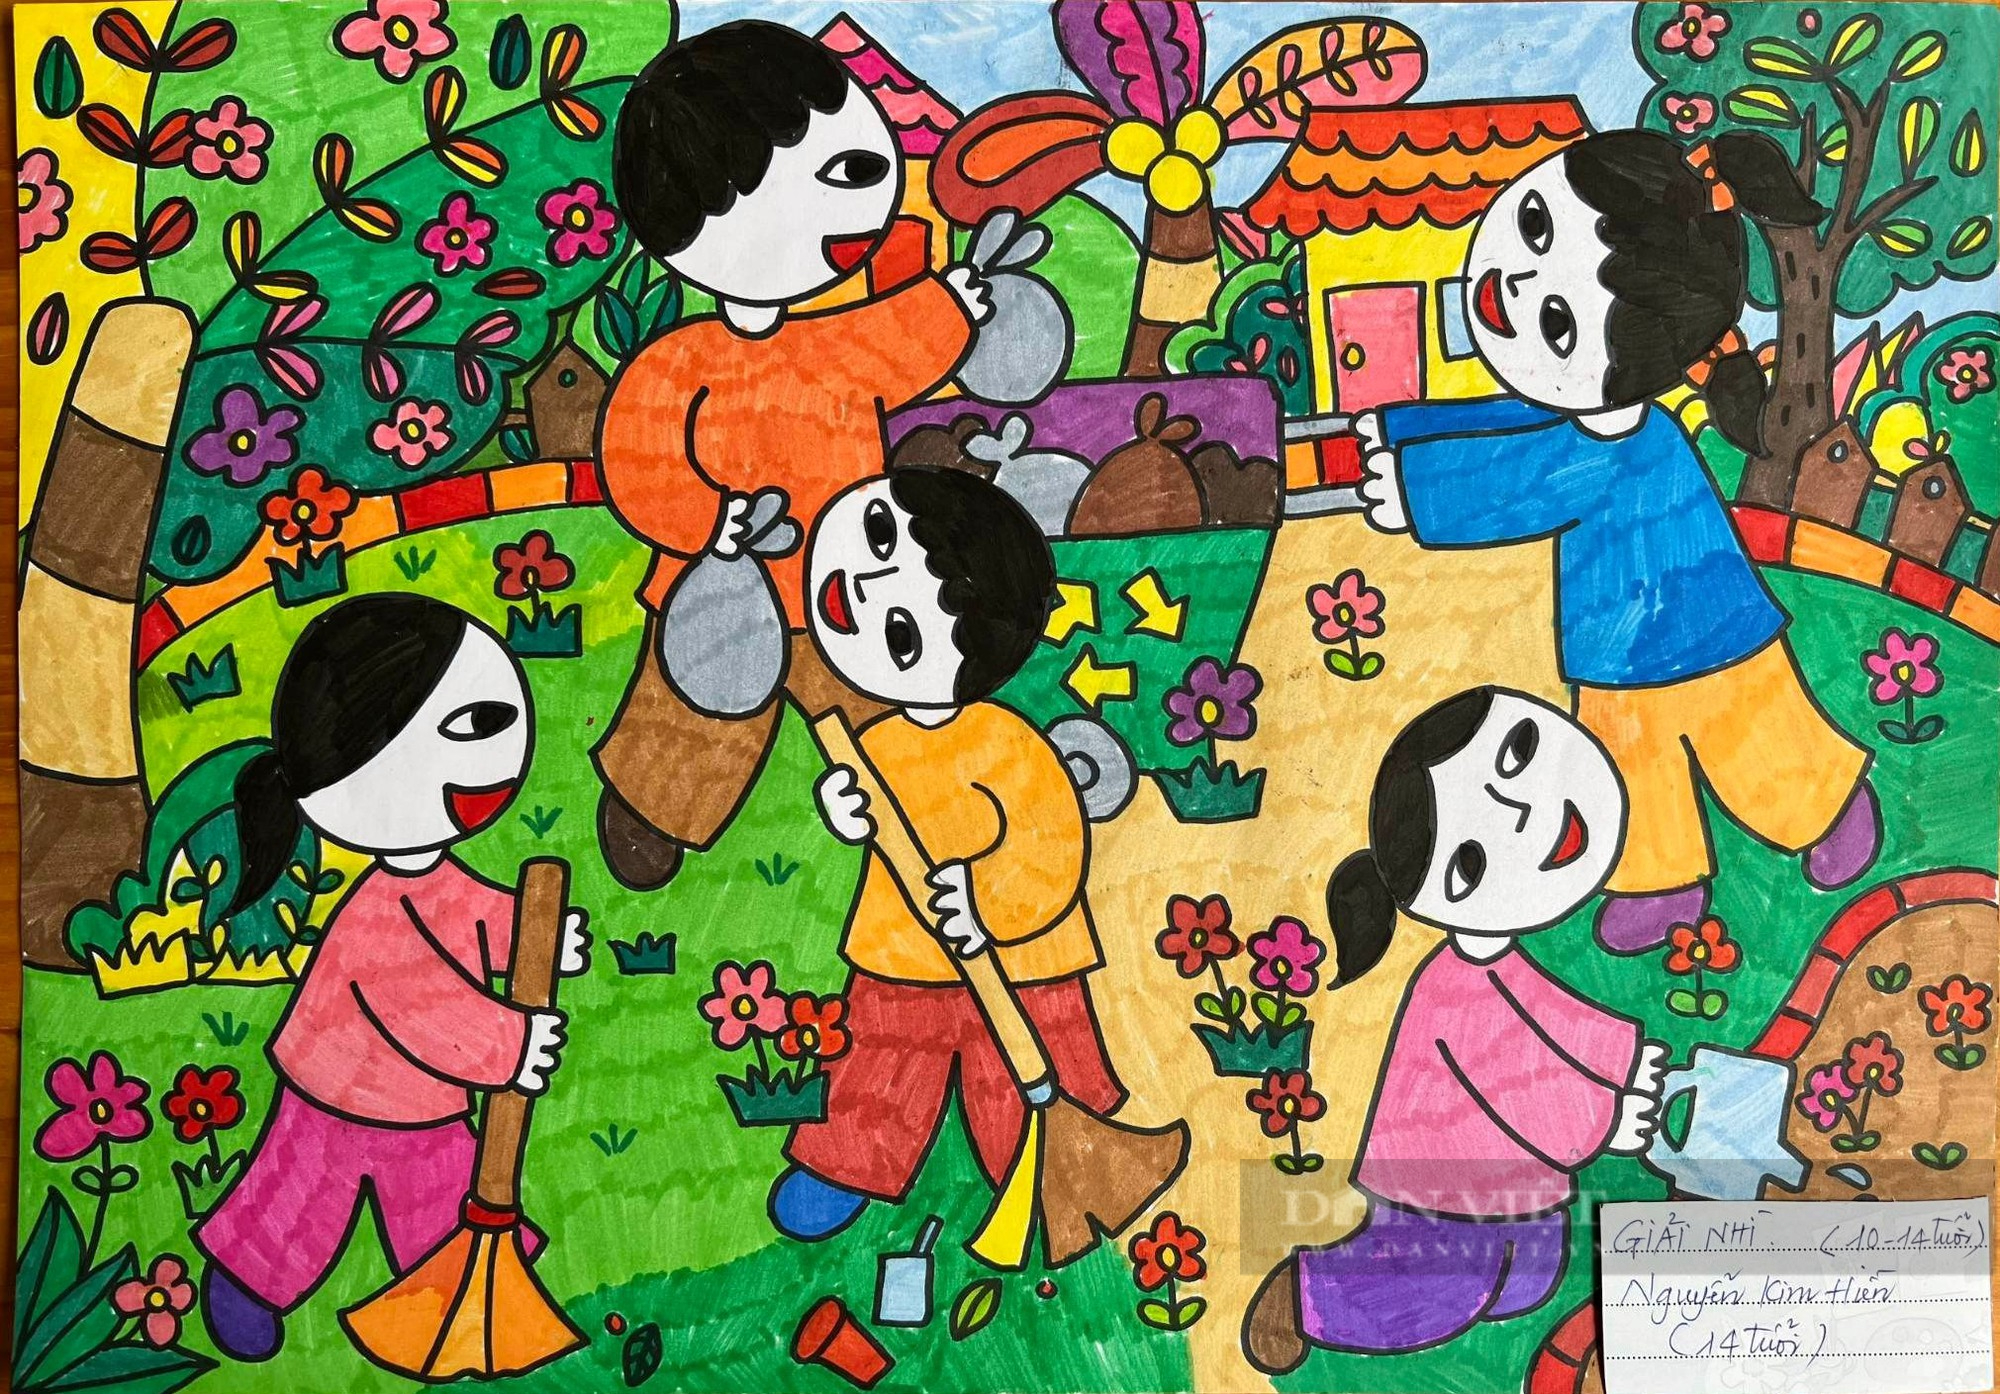 Xem hàng trăm họa sĩ nhí ở thành phố Vinh say mê sáng tạo sắc màu thiên nhiên - Ảnh 3.